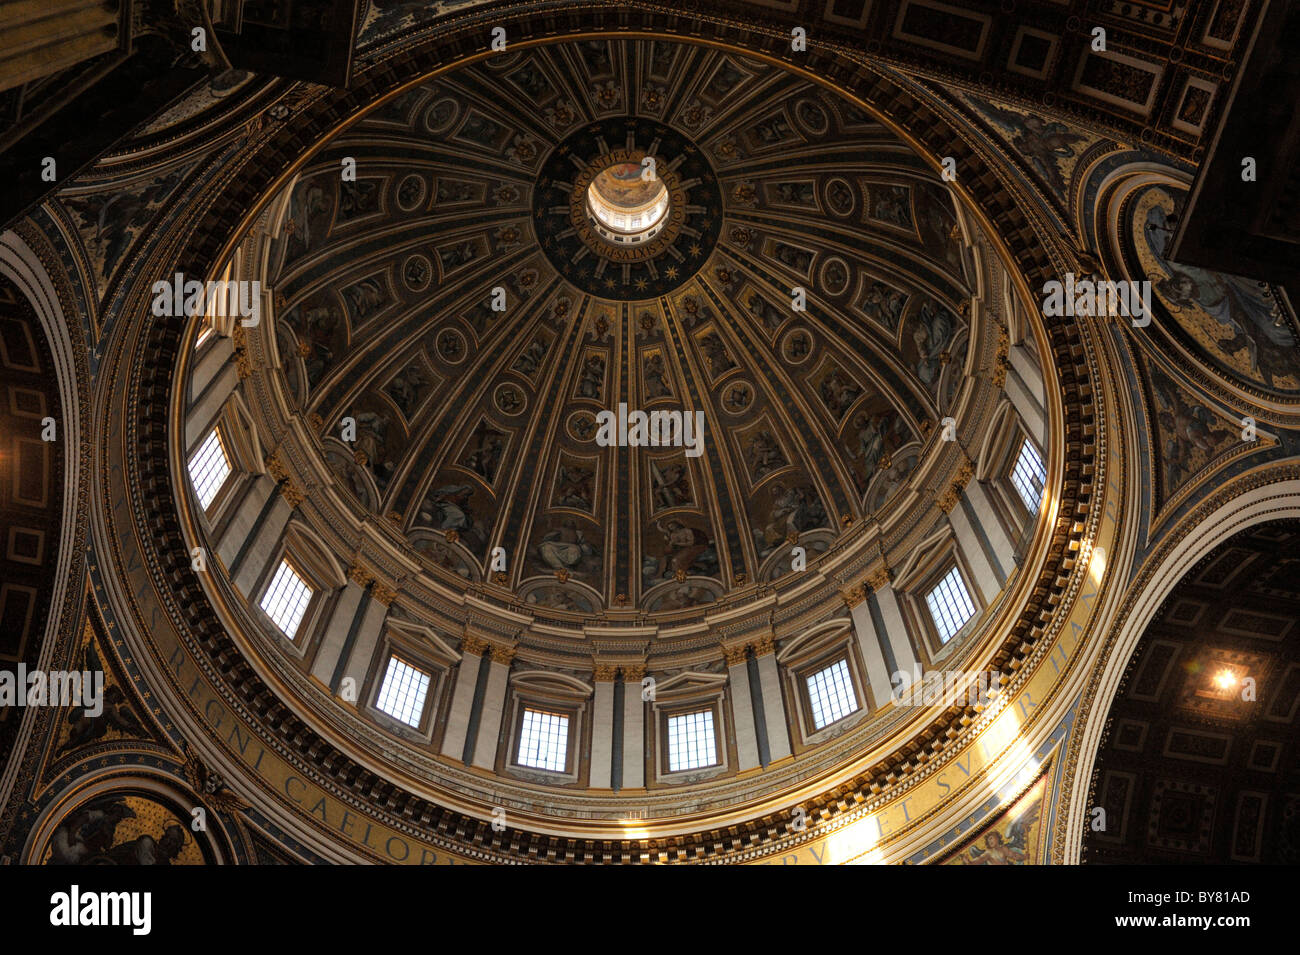 Italie, Rome, la basilique St Pierre, intérieur dome Banque D'Images